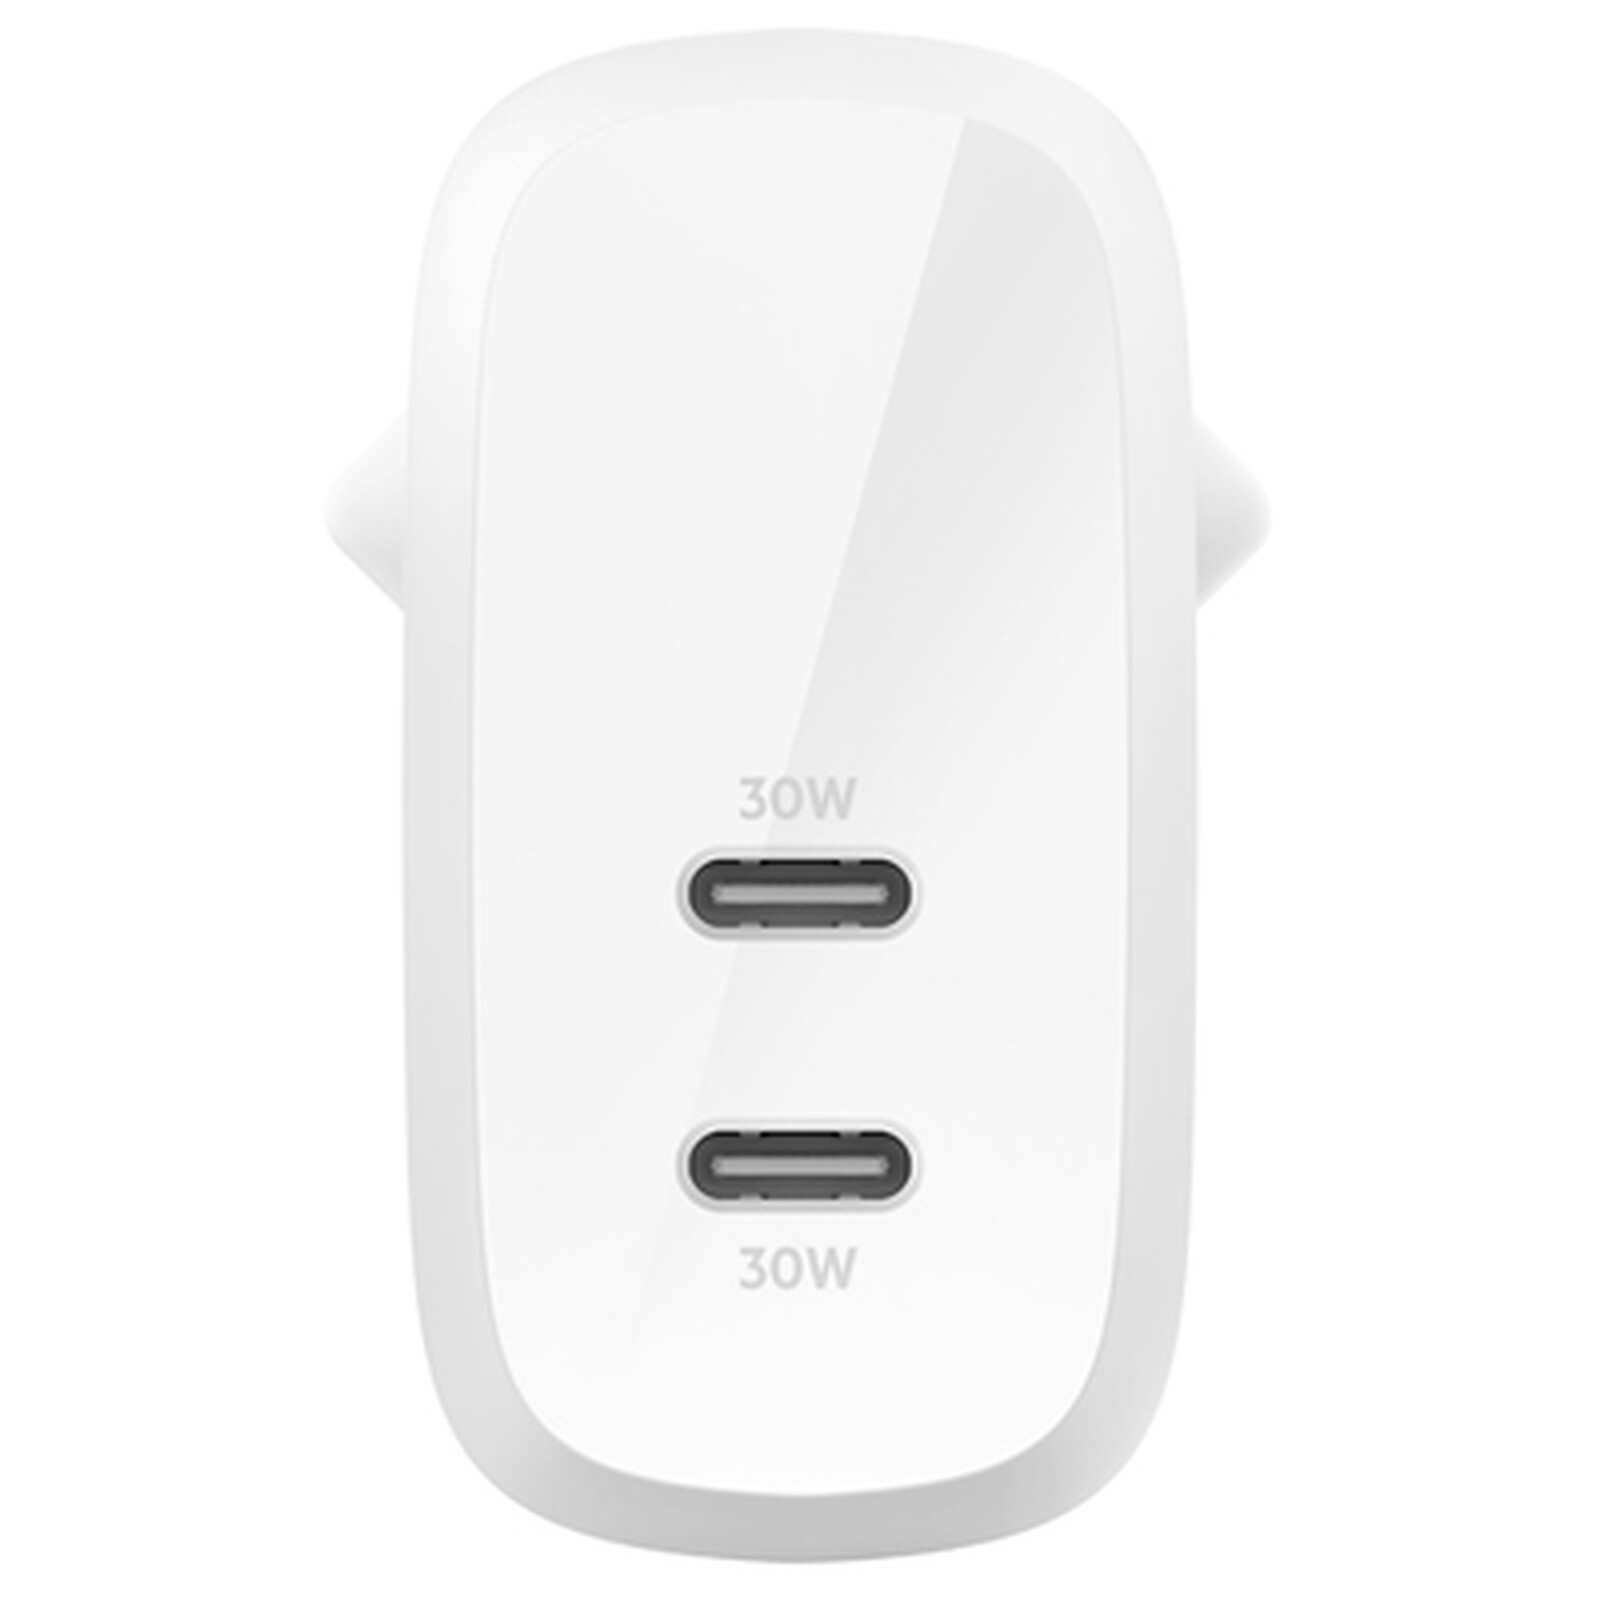 Belkin BoostCharge - Cargador de pared USB C de 68 W GaN con dos puertos -  Cargador de iPhone de carga rápida, cargador tipo C, cargador USB C con PD